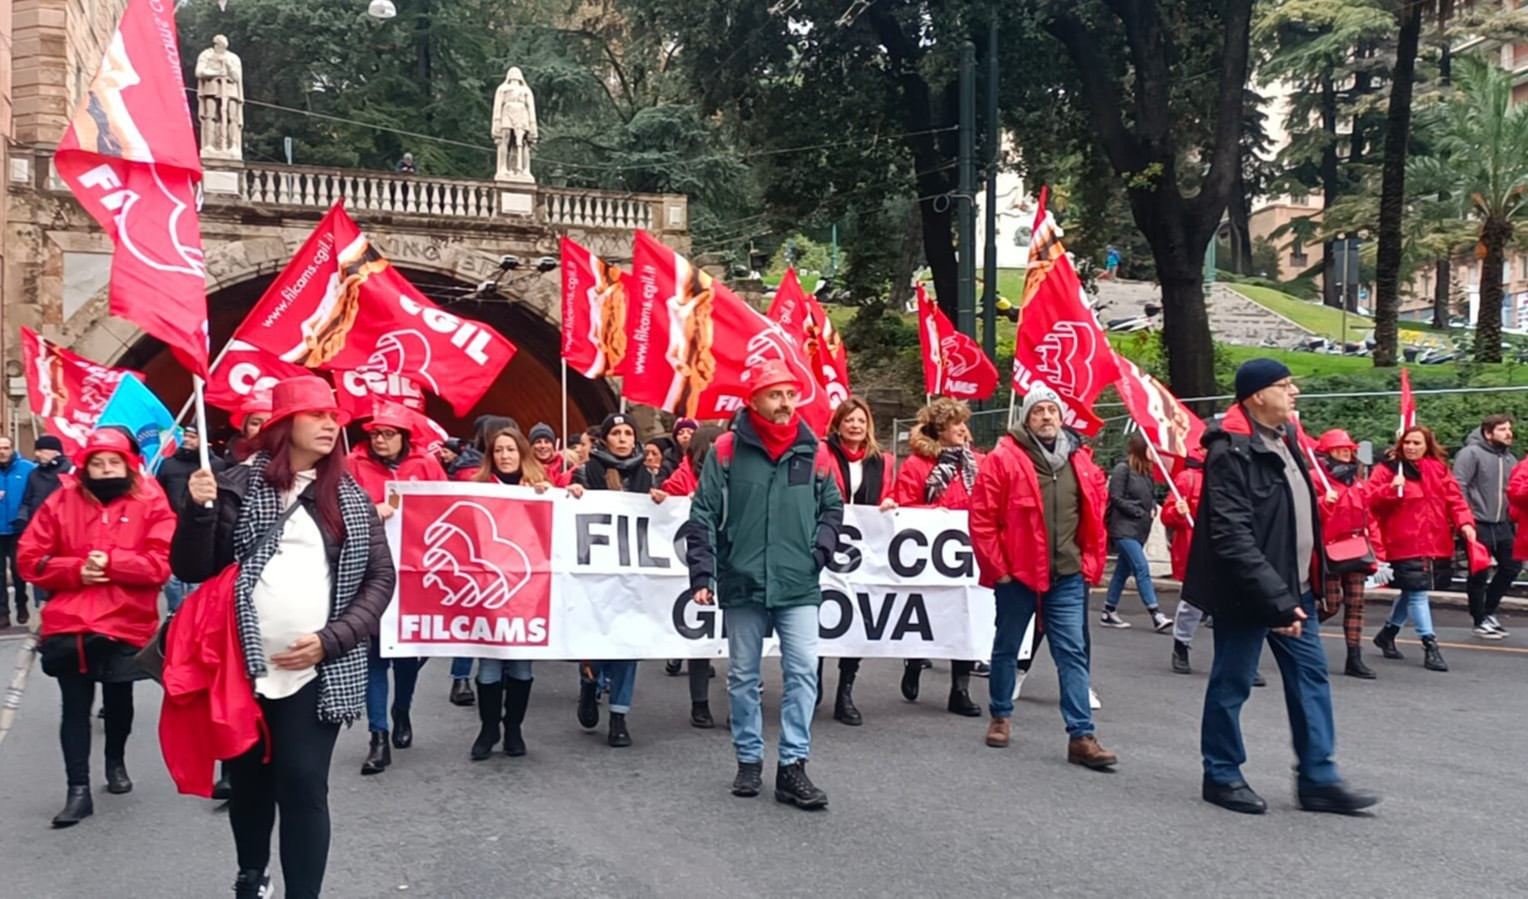 Trasporto pubblico, scuola, sanità: sciopero generale anche in Liguria